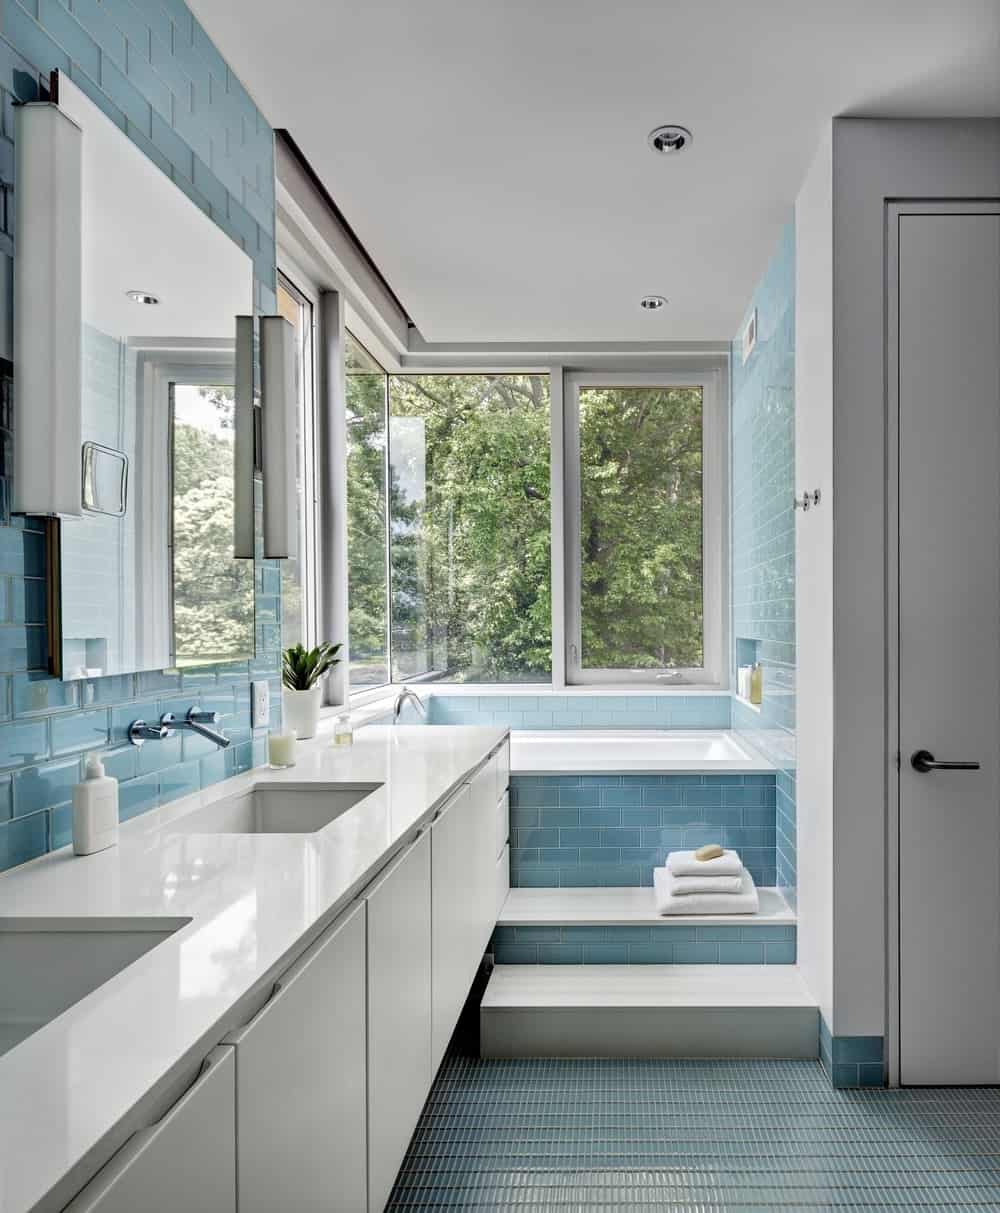 这个浴室有蓝色瓷砖的台阶和下沉的浴缸，给人一种游泳池的错觉。浴缸旁边的窗户可以看到外面的美景，使这个浴室成为一个放松的温泉般的下午的完美场所。